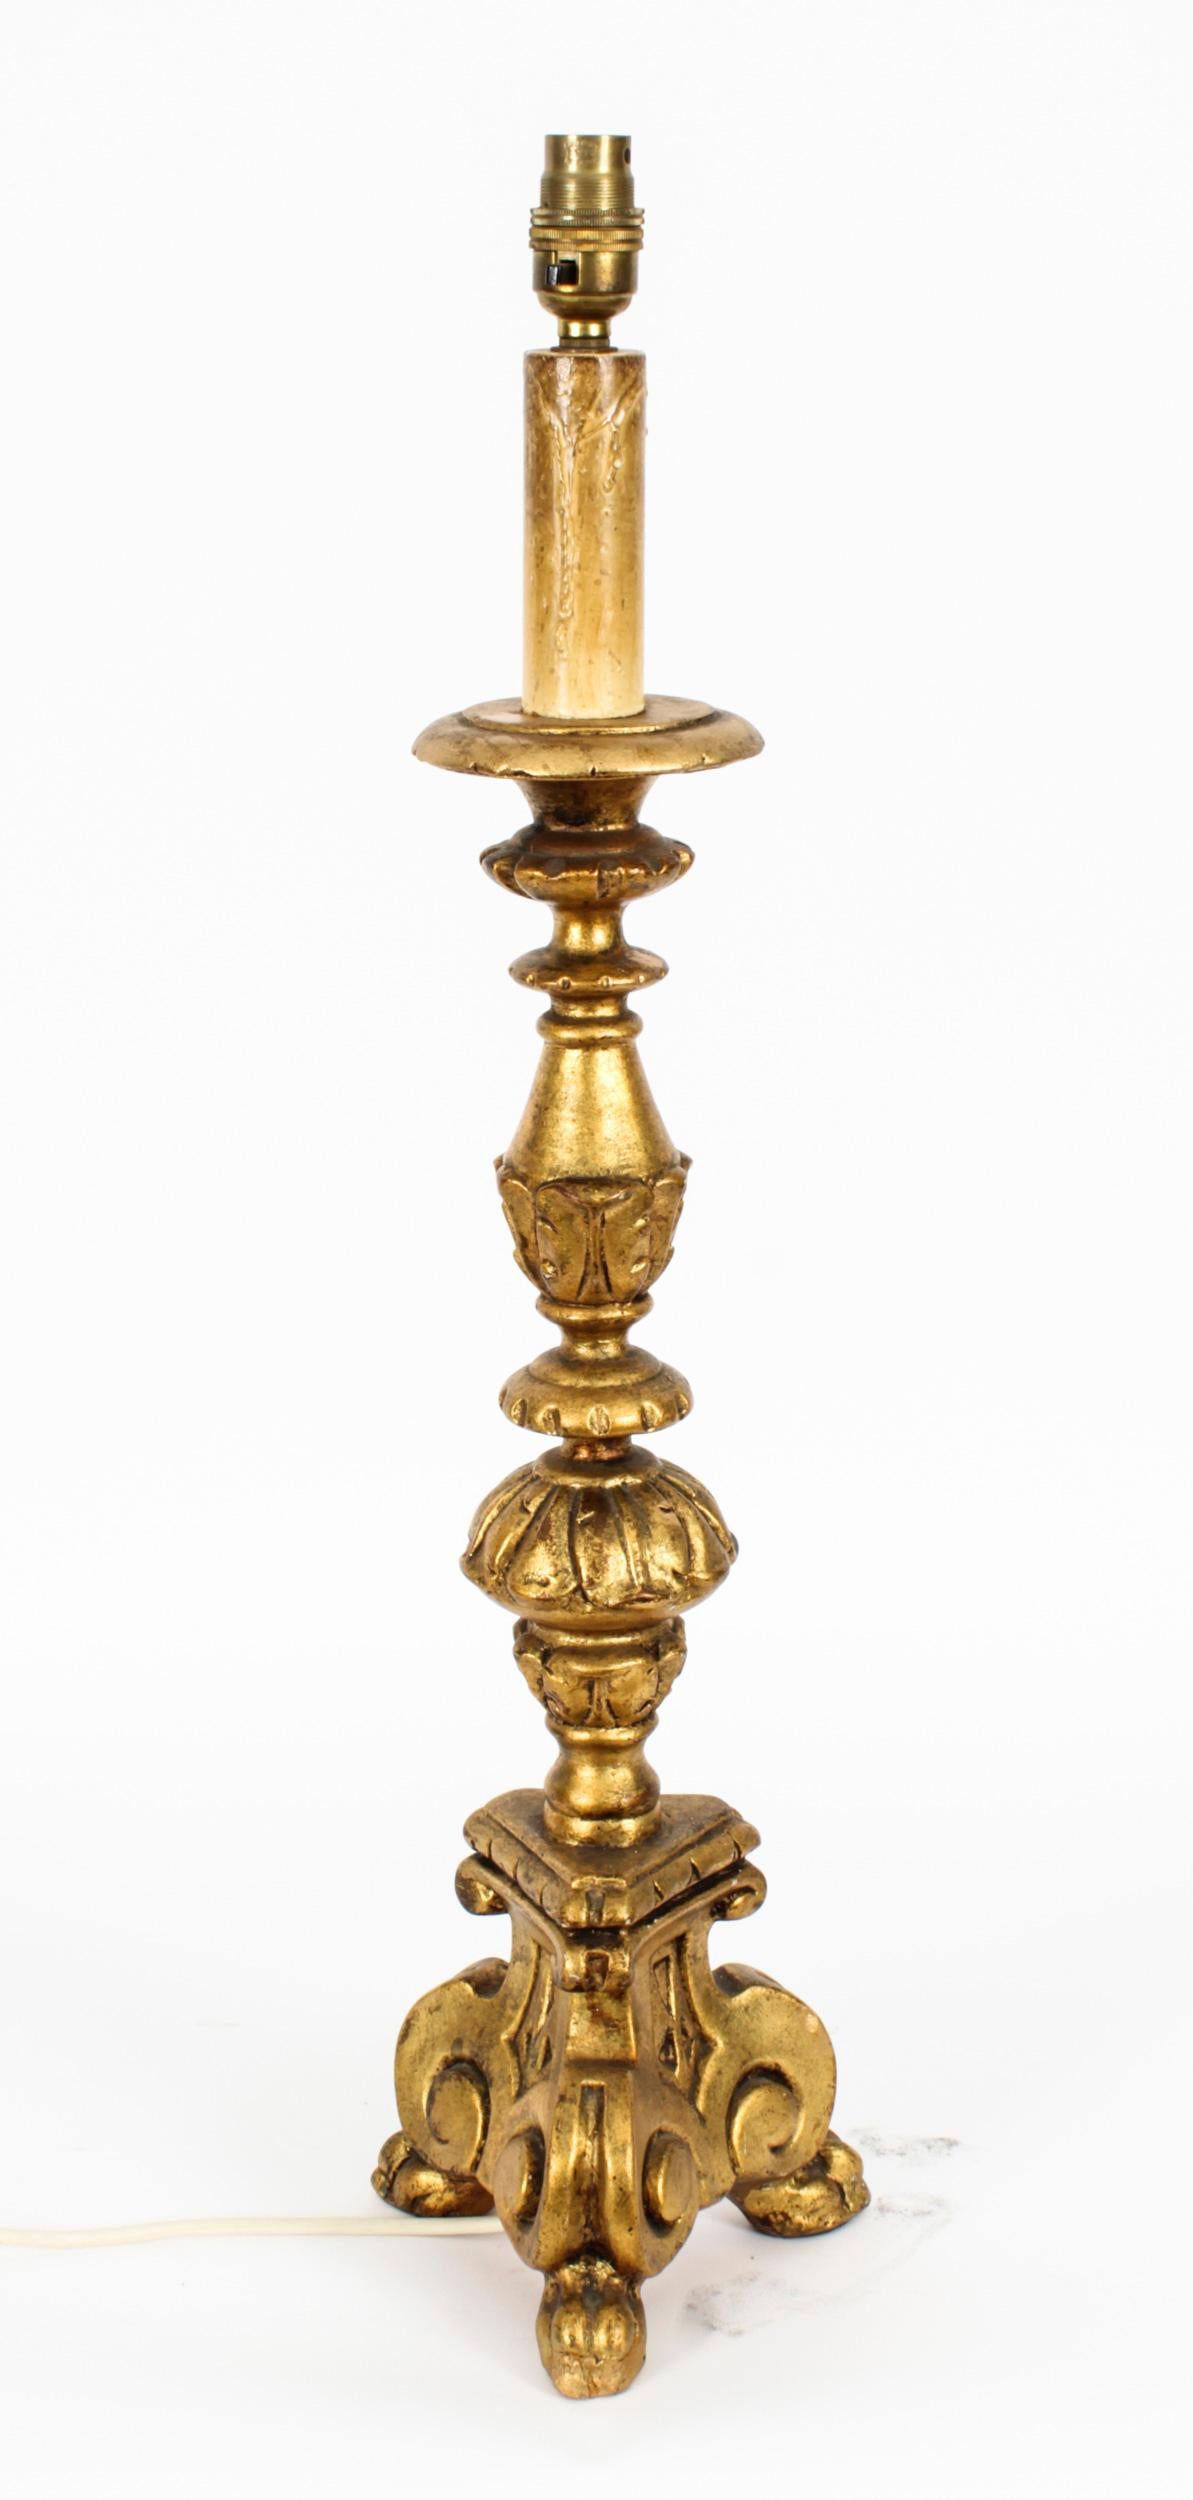 Dies ist eine prächtige italienische vergoldete Barocklampe aus der Mitte des 20. Jahrhunderts.

Diese opulente Tischleuchte verfügt über einen Kerzenkopf mit einem Stiel, der mit klassischem, verschnörkeltem Blattwerk in Form von prächtigen